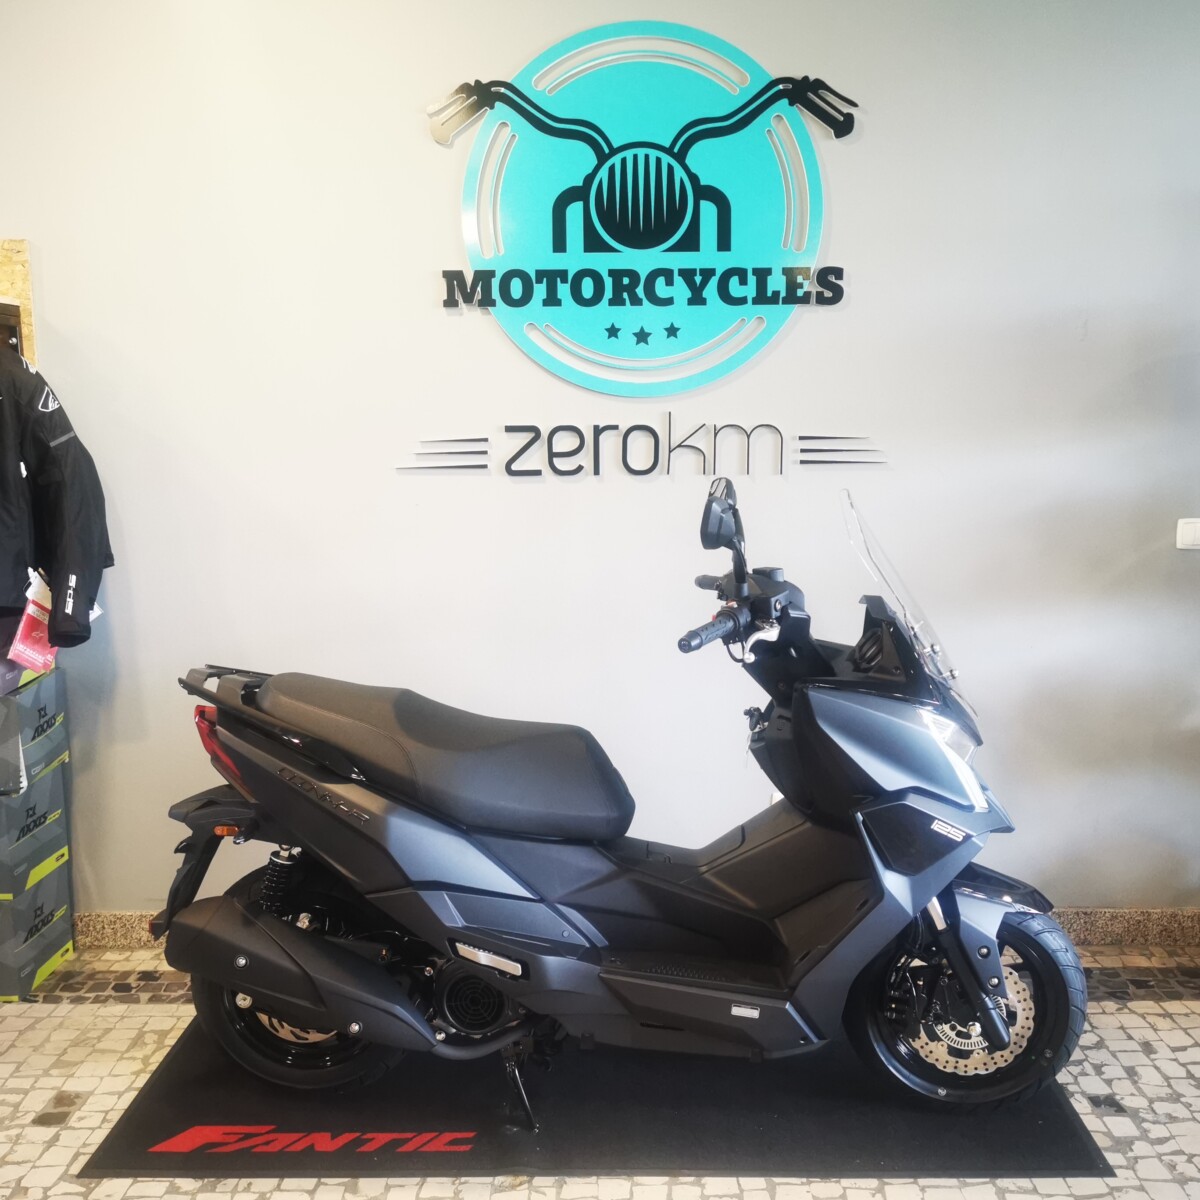 Mitt Motas e Scooters Novas em Portugal - preços e características - Andar  de Moto